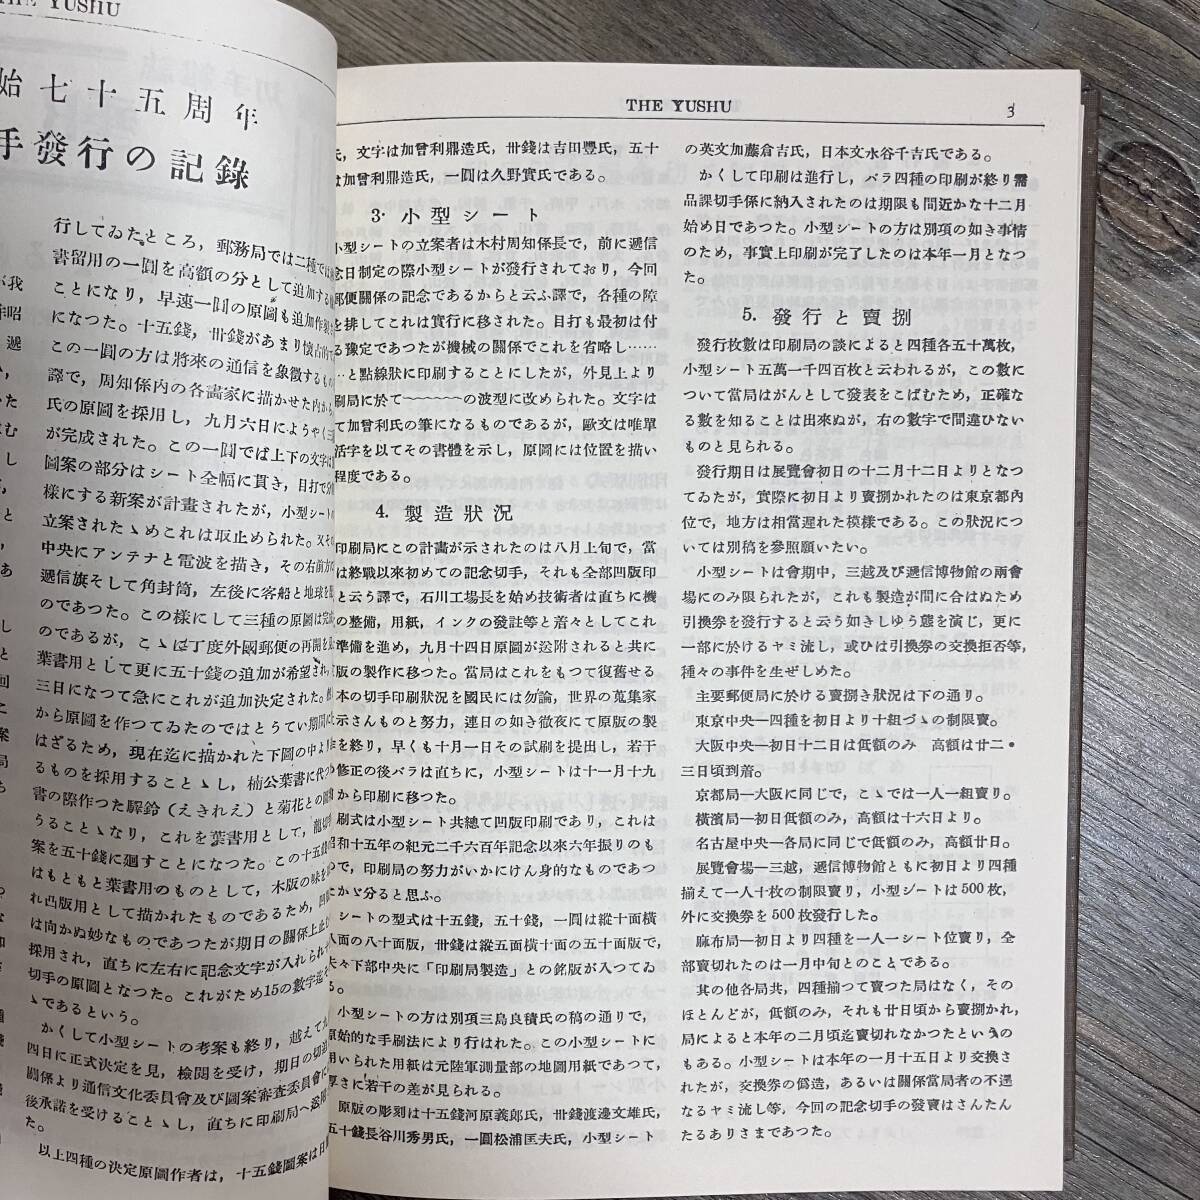 K-1726■郵趣 1946 1947 1949 復刻版 第1巻■日本郵趣協会■1981年3月20日発行■_画像6